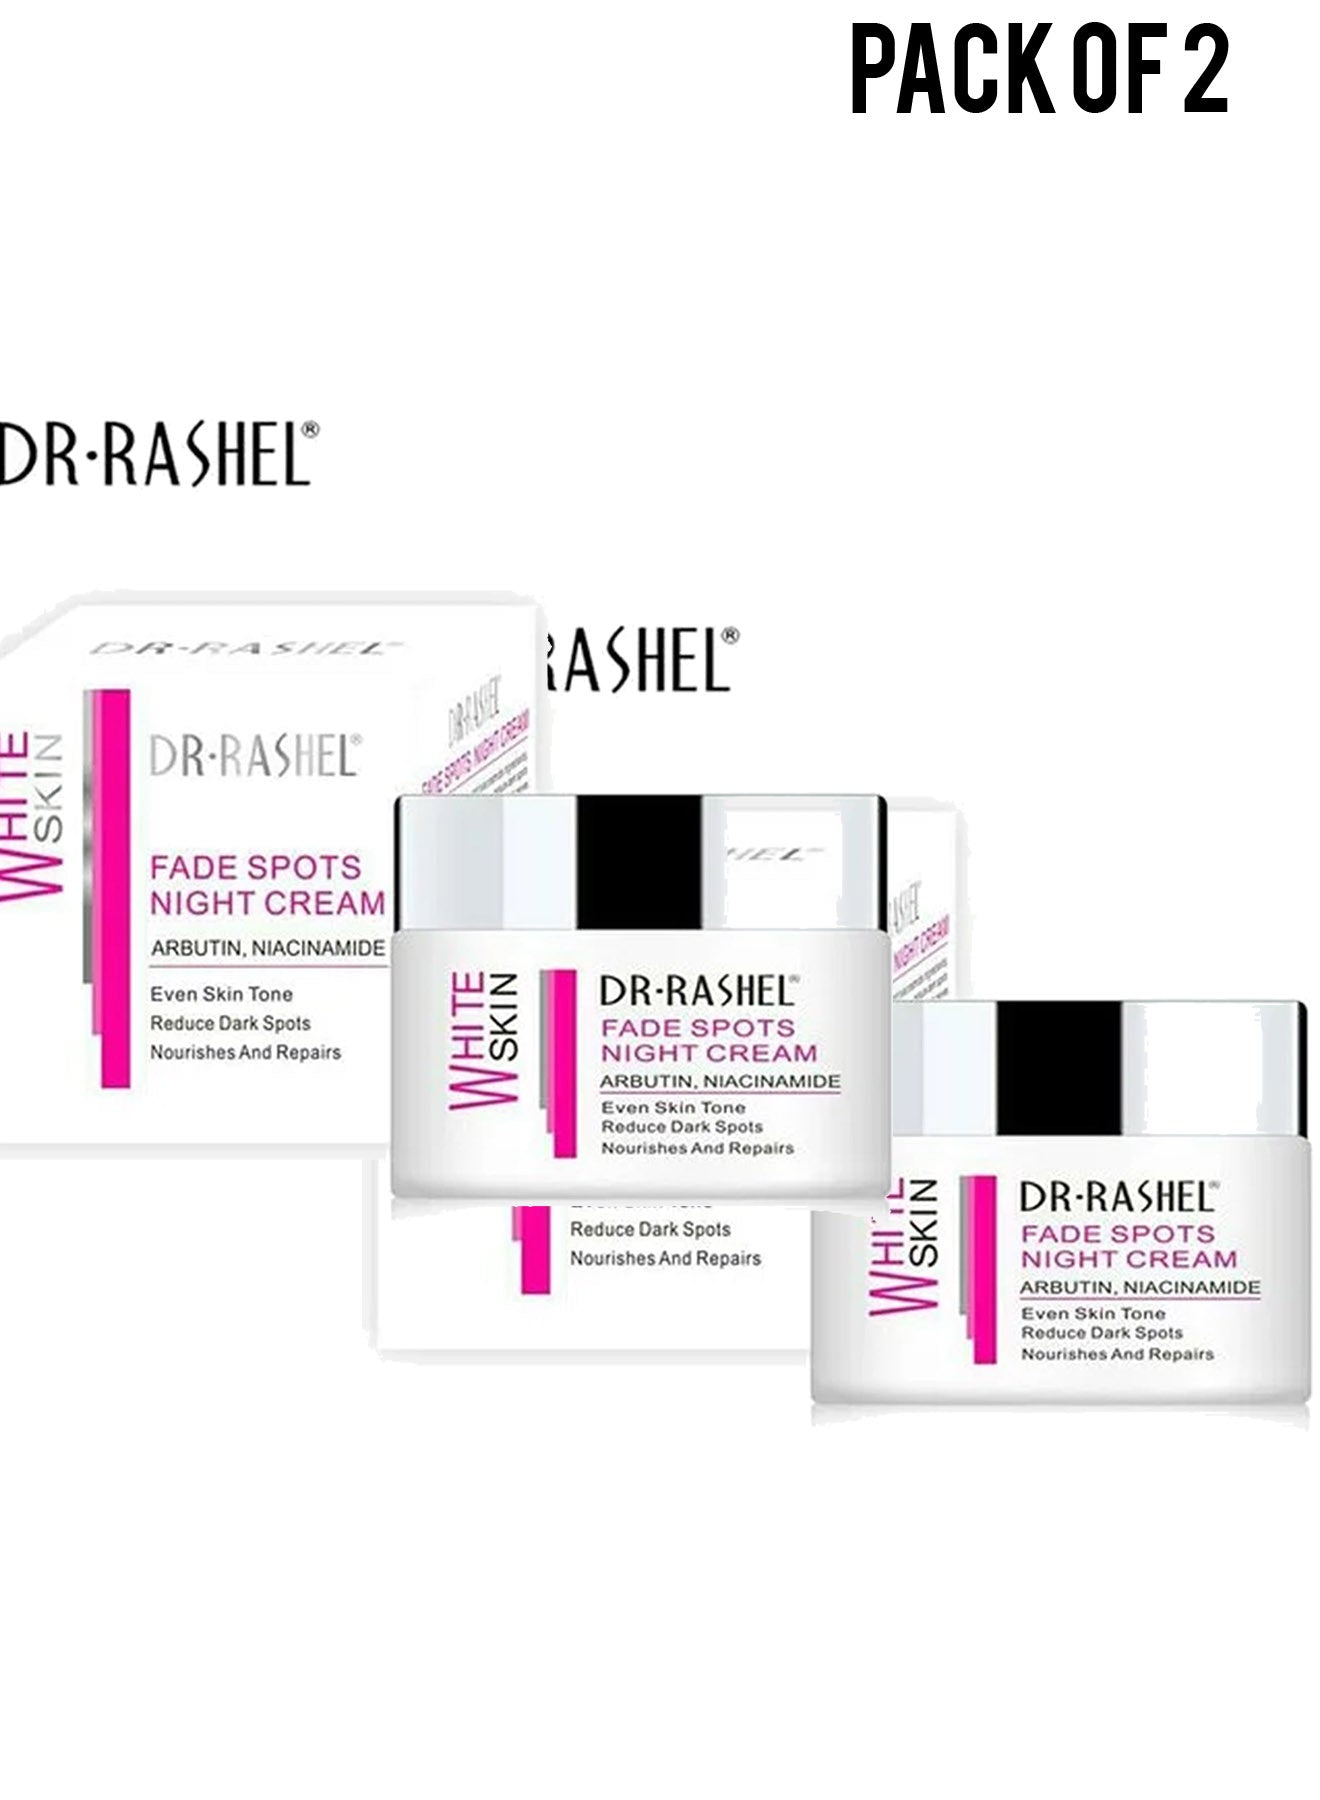 Dr Rashel White Skin Fade Spots Night Cream 50g Value Pack of 2 